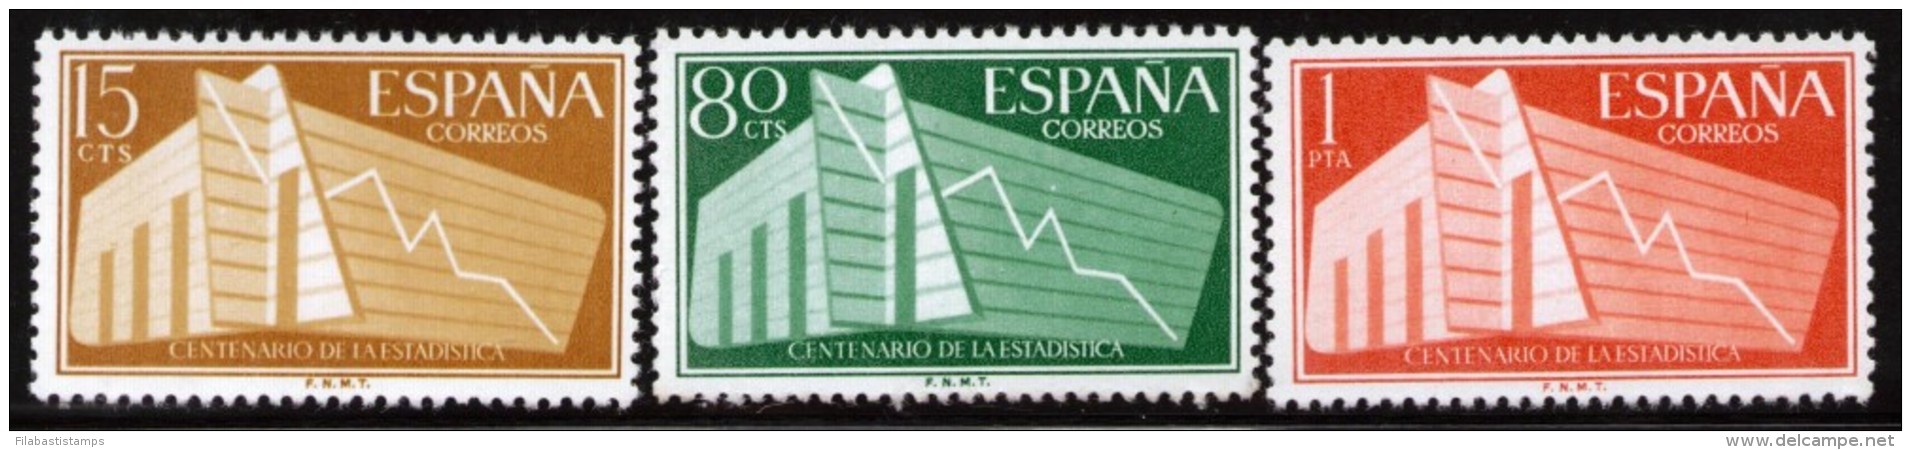 1956 EDIFIL 1196 1198 I CENTENARIO DE LA ESTADÍSTICA ESPAÑOLA MNH SPAIN SPANIEN ESPAGNE SPANJE - Nuevos